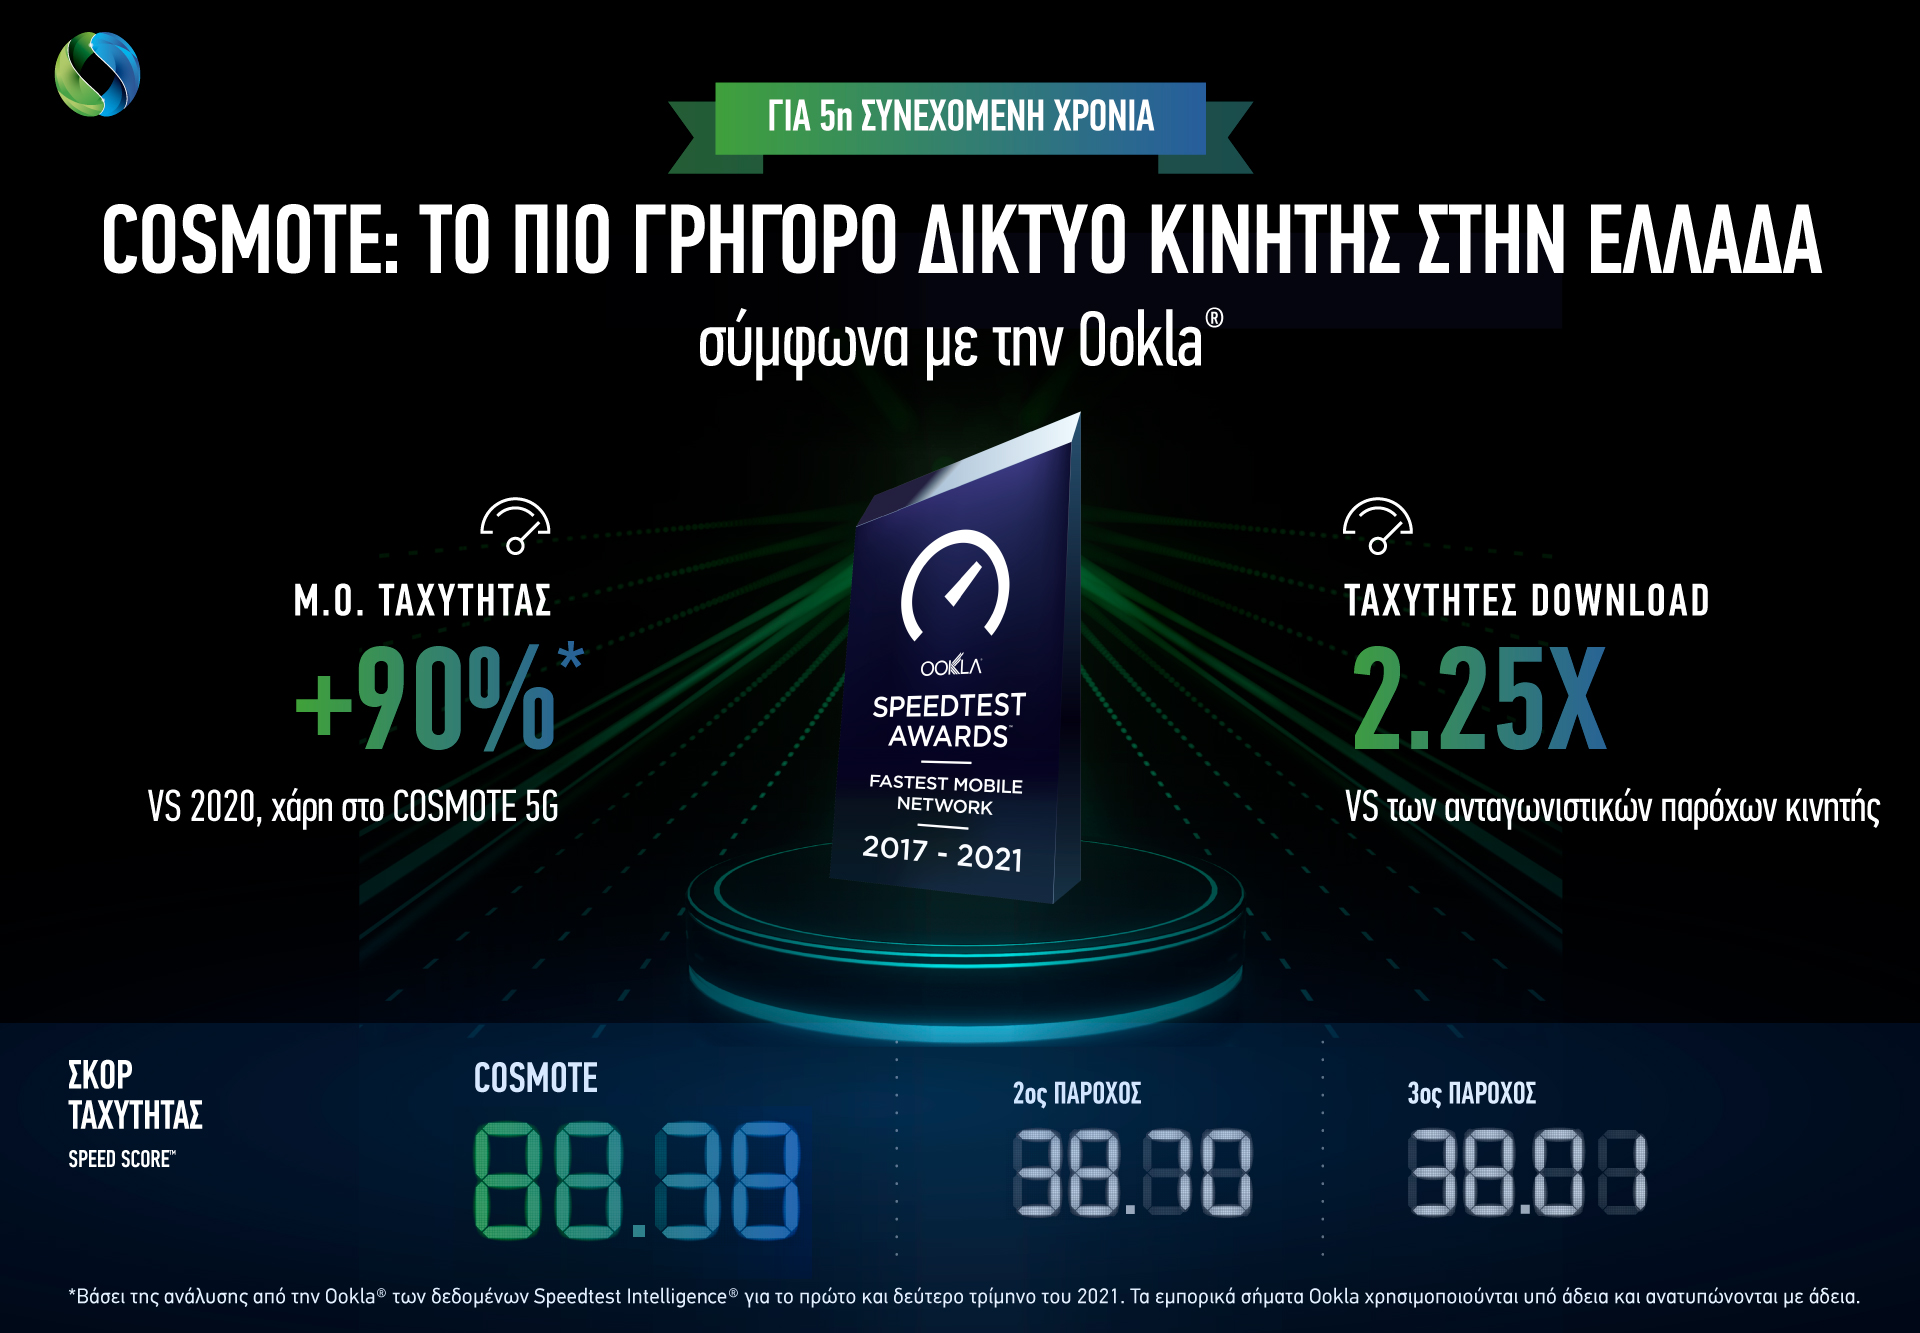 Για 5η συνεχή χρονιά η COSMOTE αναδεικνύεται «το πιο γρήγορο δίκτυο κινητής στην Ελλάδας